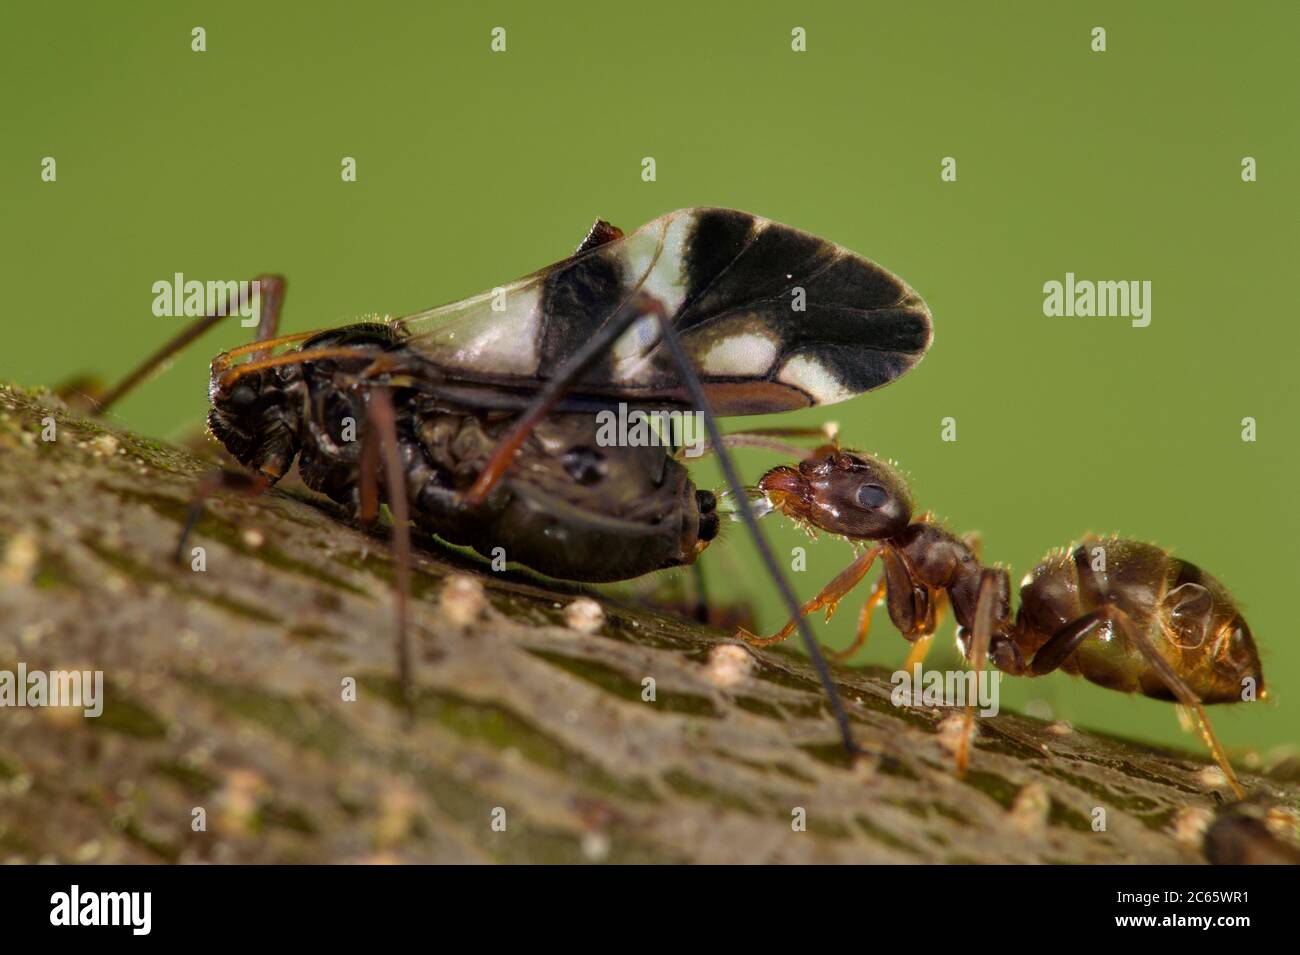 Ameisen und Blattläuse haben eine mutualistische Beziehung. Ameisen ernähren sich von dem Honigtau, der von den Blattläusen ausgeschieden wird, und schützen die Blattläuse im Gegenzug. Naturschutzgebiet Altwarper Binnendünen, Mecklenburg-Vorpommern, Deutschland Stockfoto